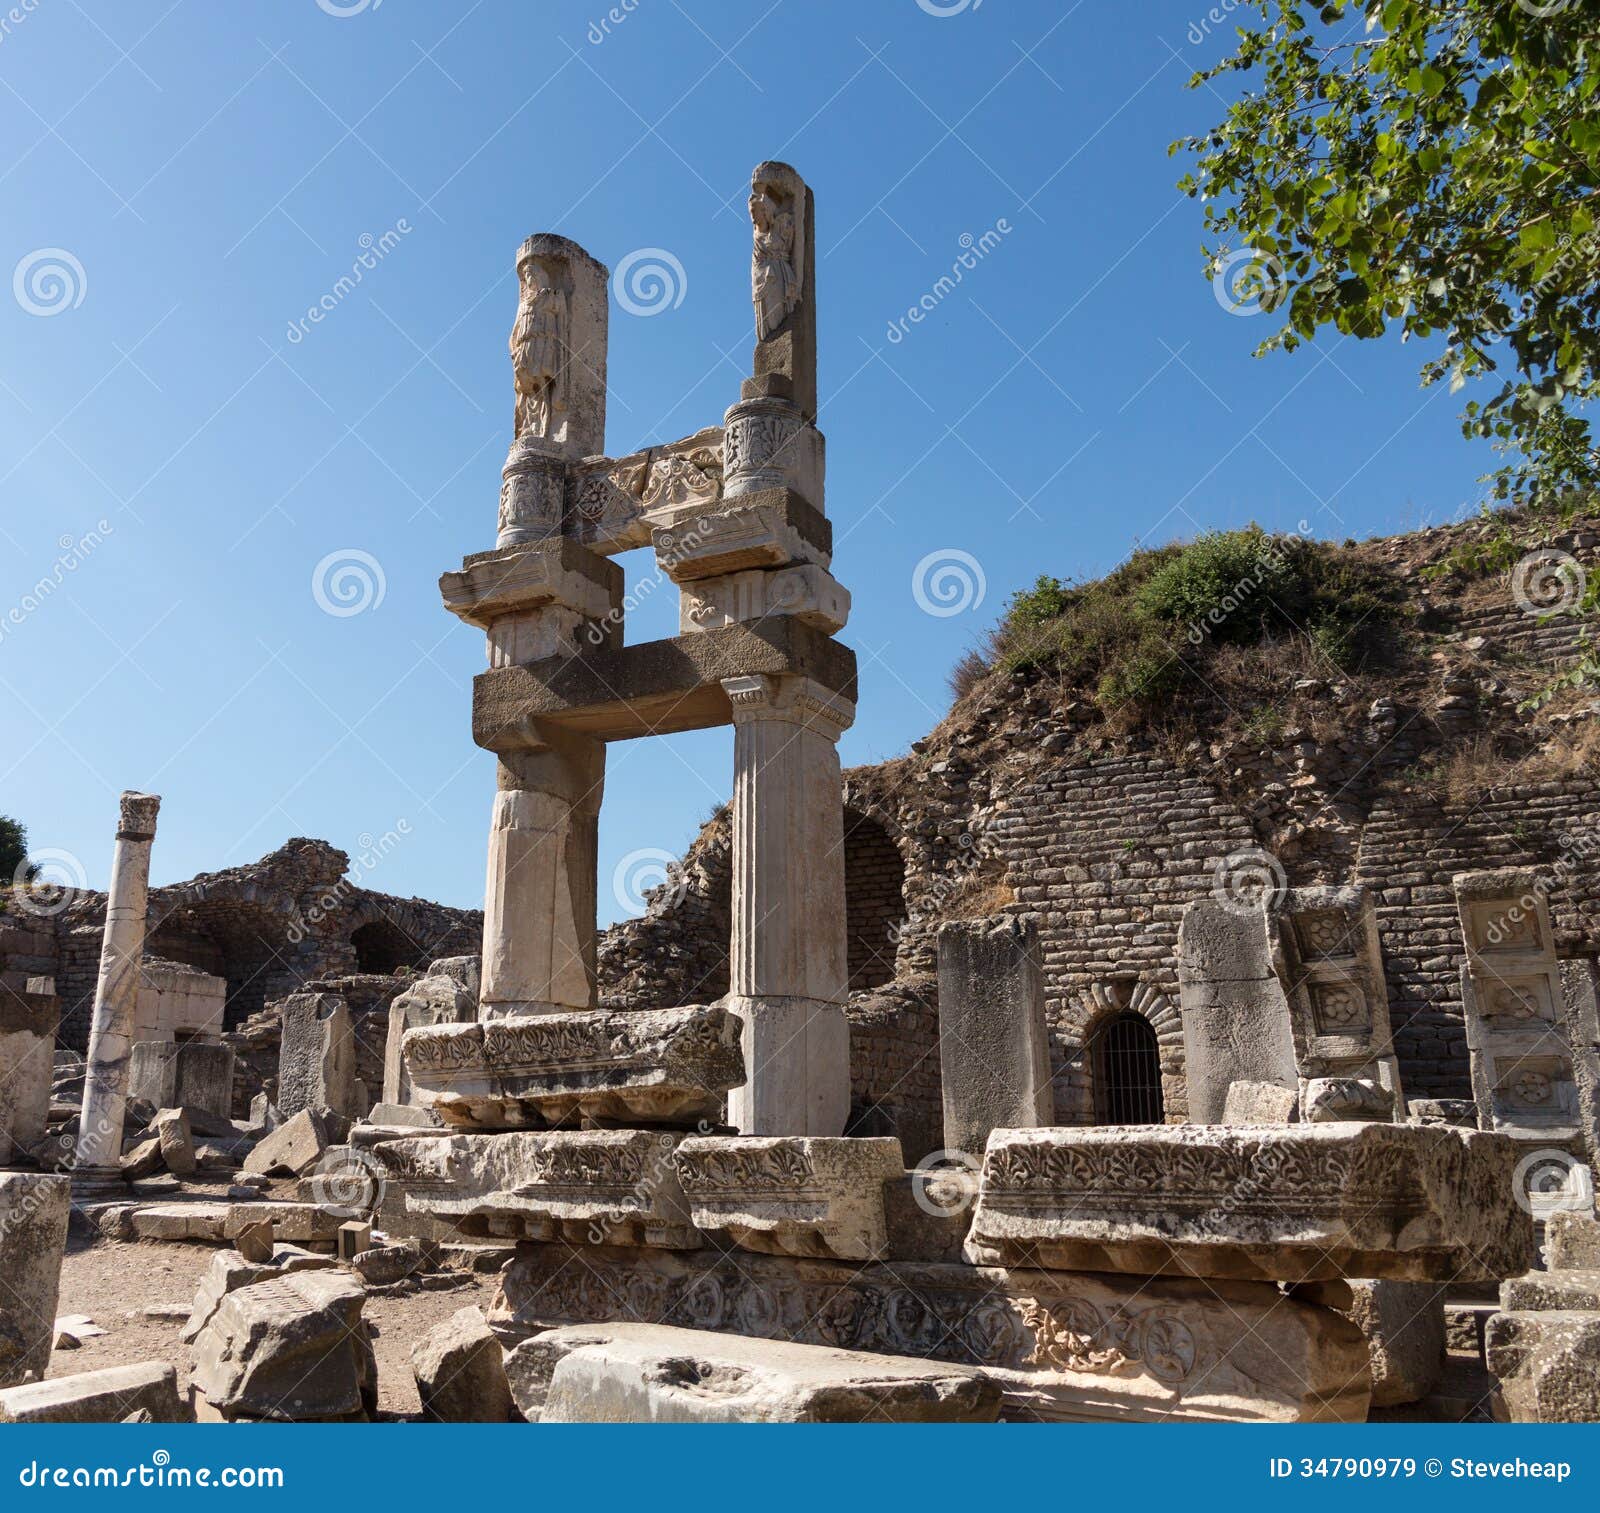 Rovine antiche di vecchia città greca di Ephesus. Rovine delle costruzioni in vecchia città di Ephesus che ora era una città famosa del greco antico in Turchia